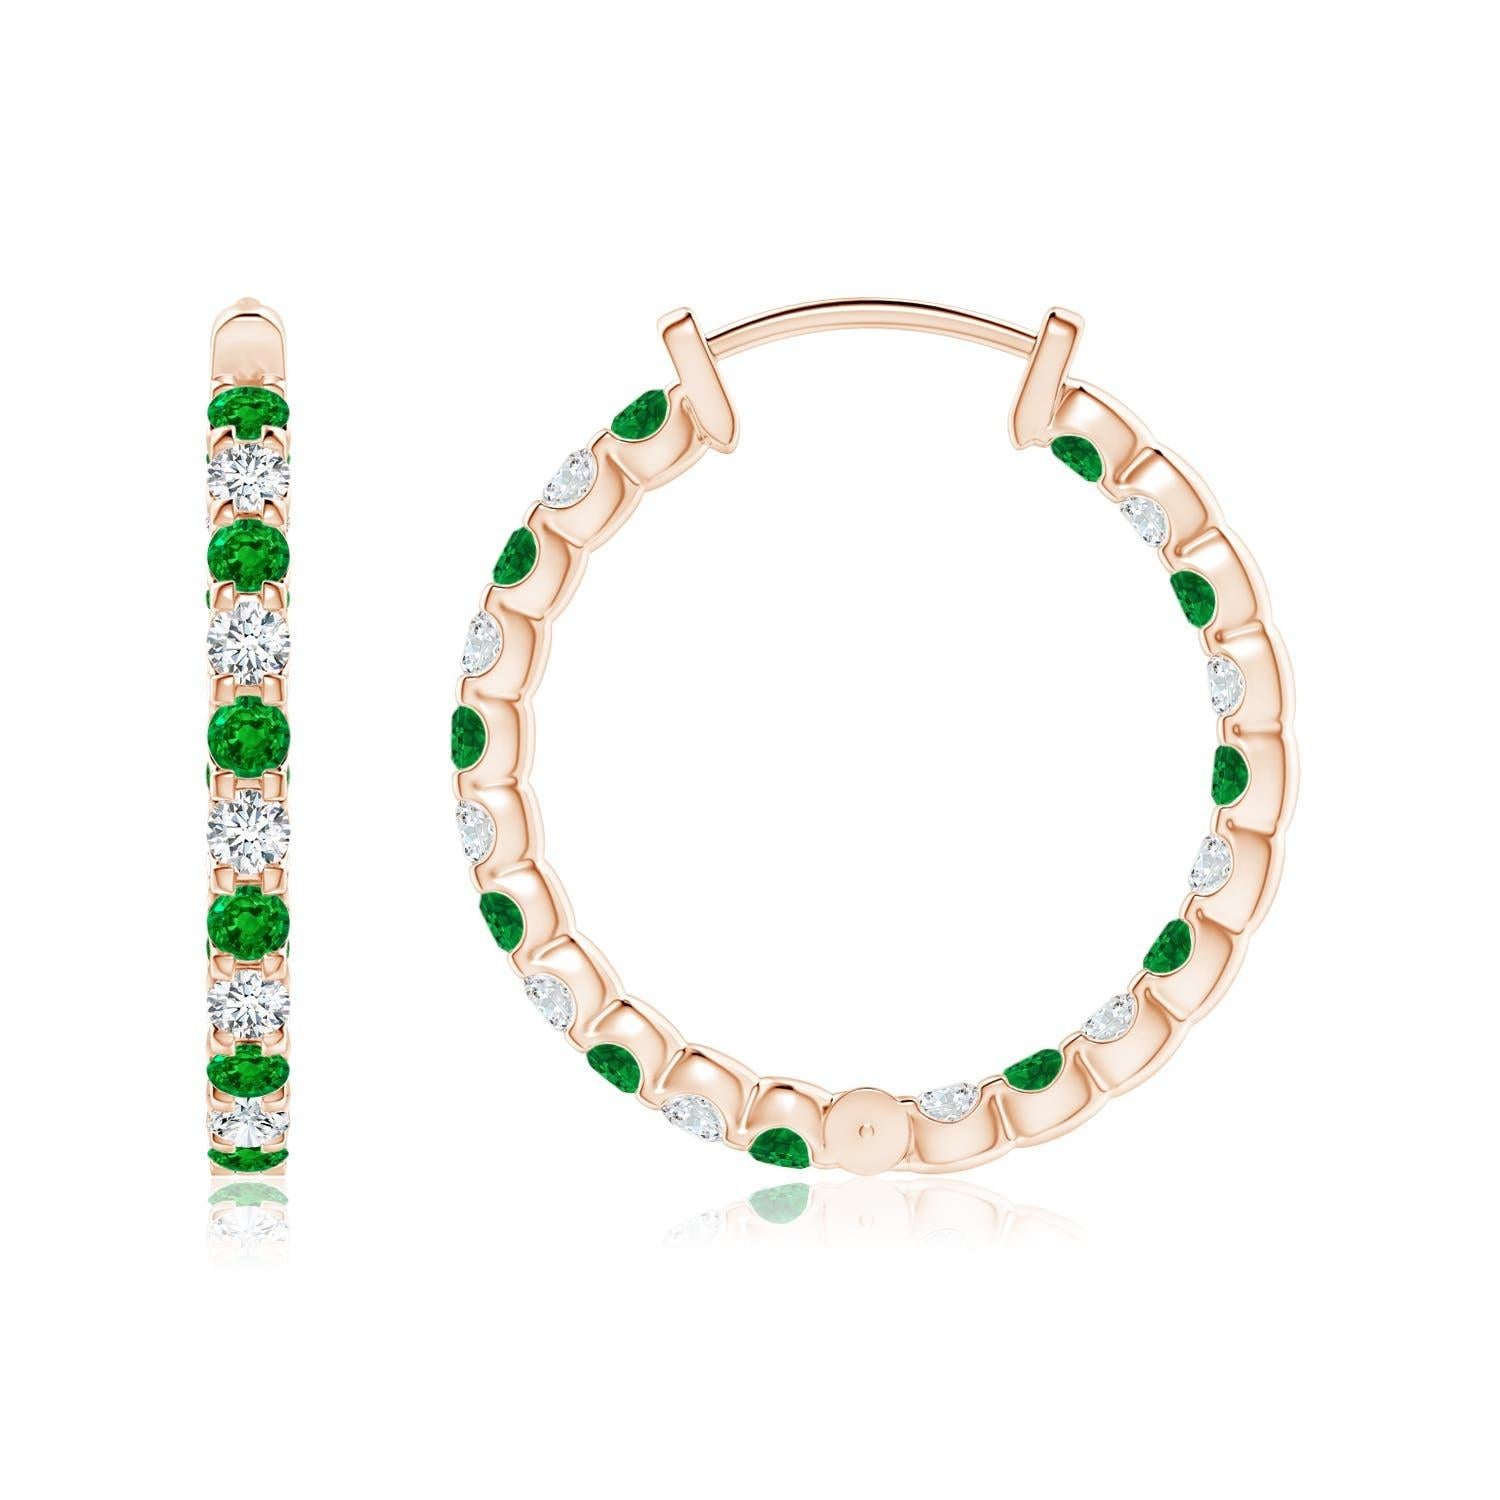 Diese atemberaubenden Ohrringe sind abwechselnd mit üppigen grünen Smaragden und Brillanten in Zackenfassung besetzt. Die funkelnden Edelsteine sind sowohl auf der Außenseite als auch auf der Innenseite dieser 14 Karat Roségold-Ringe verziert und